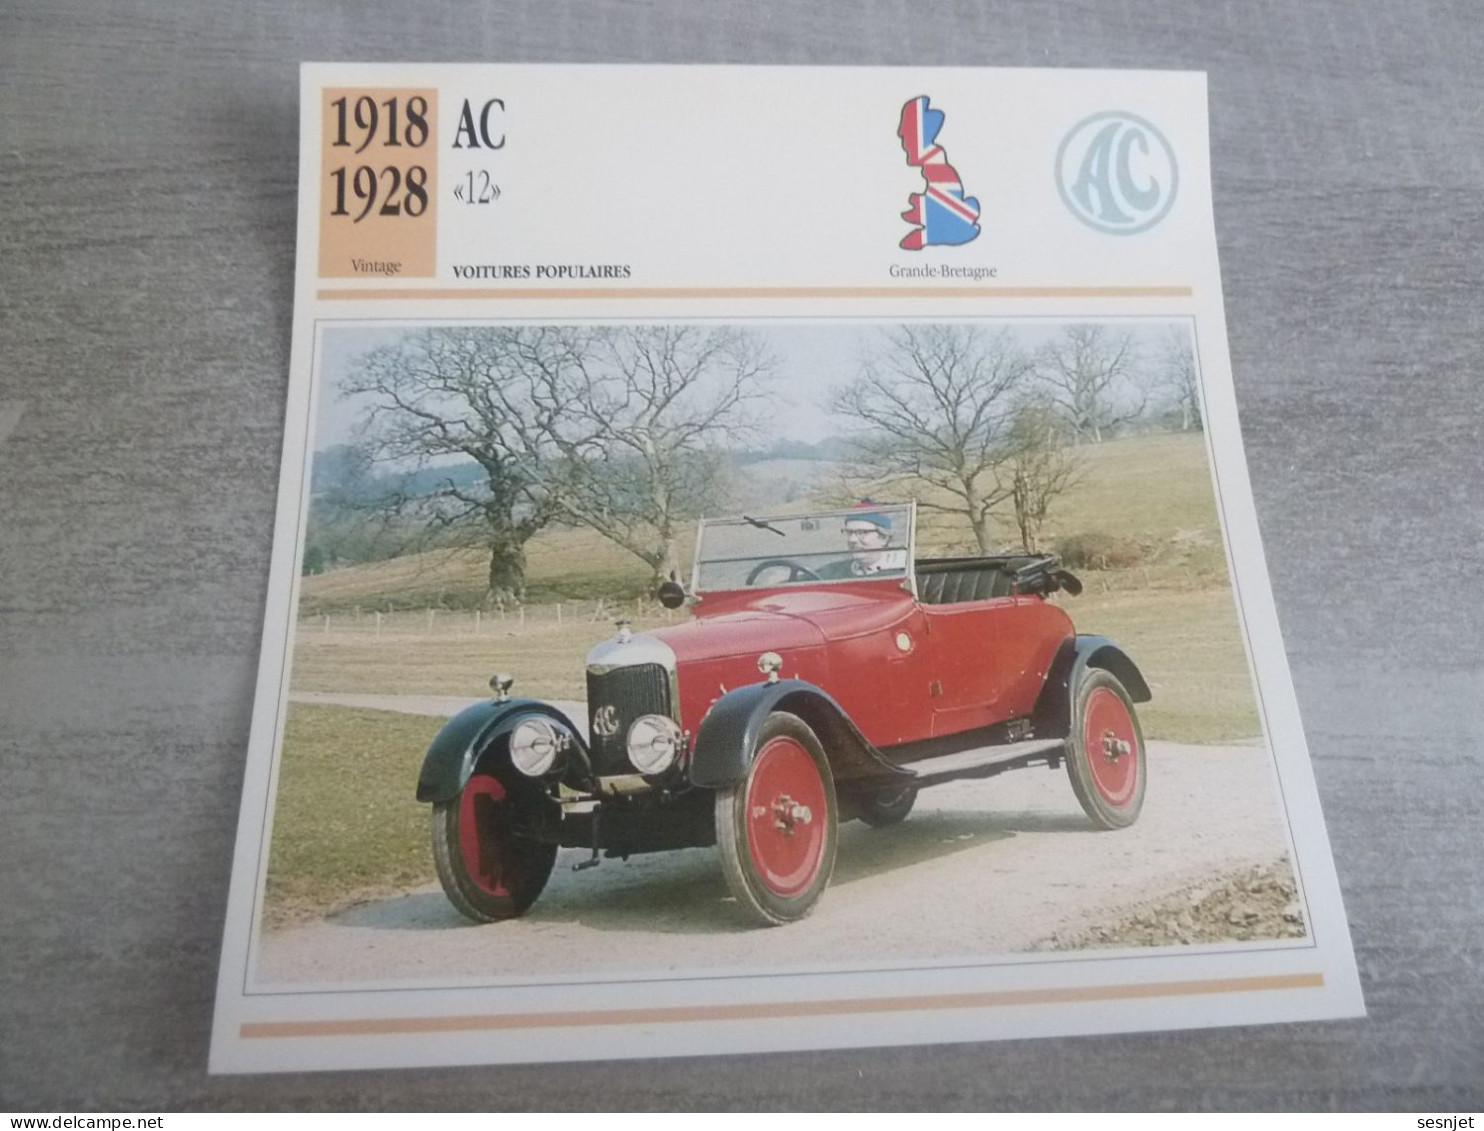 1918-1928 - Voitures Populaires - Ac (12) - Moteur Anzani - Grande-Bretagne - Fiche Technique - - Passenger Cars